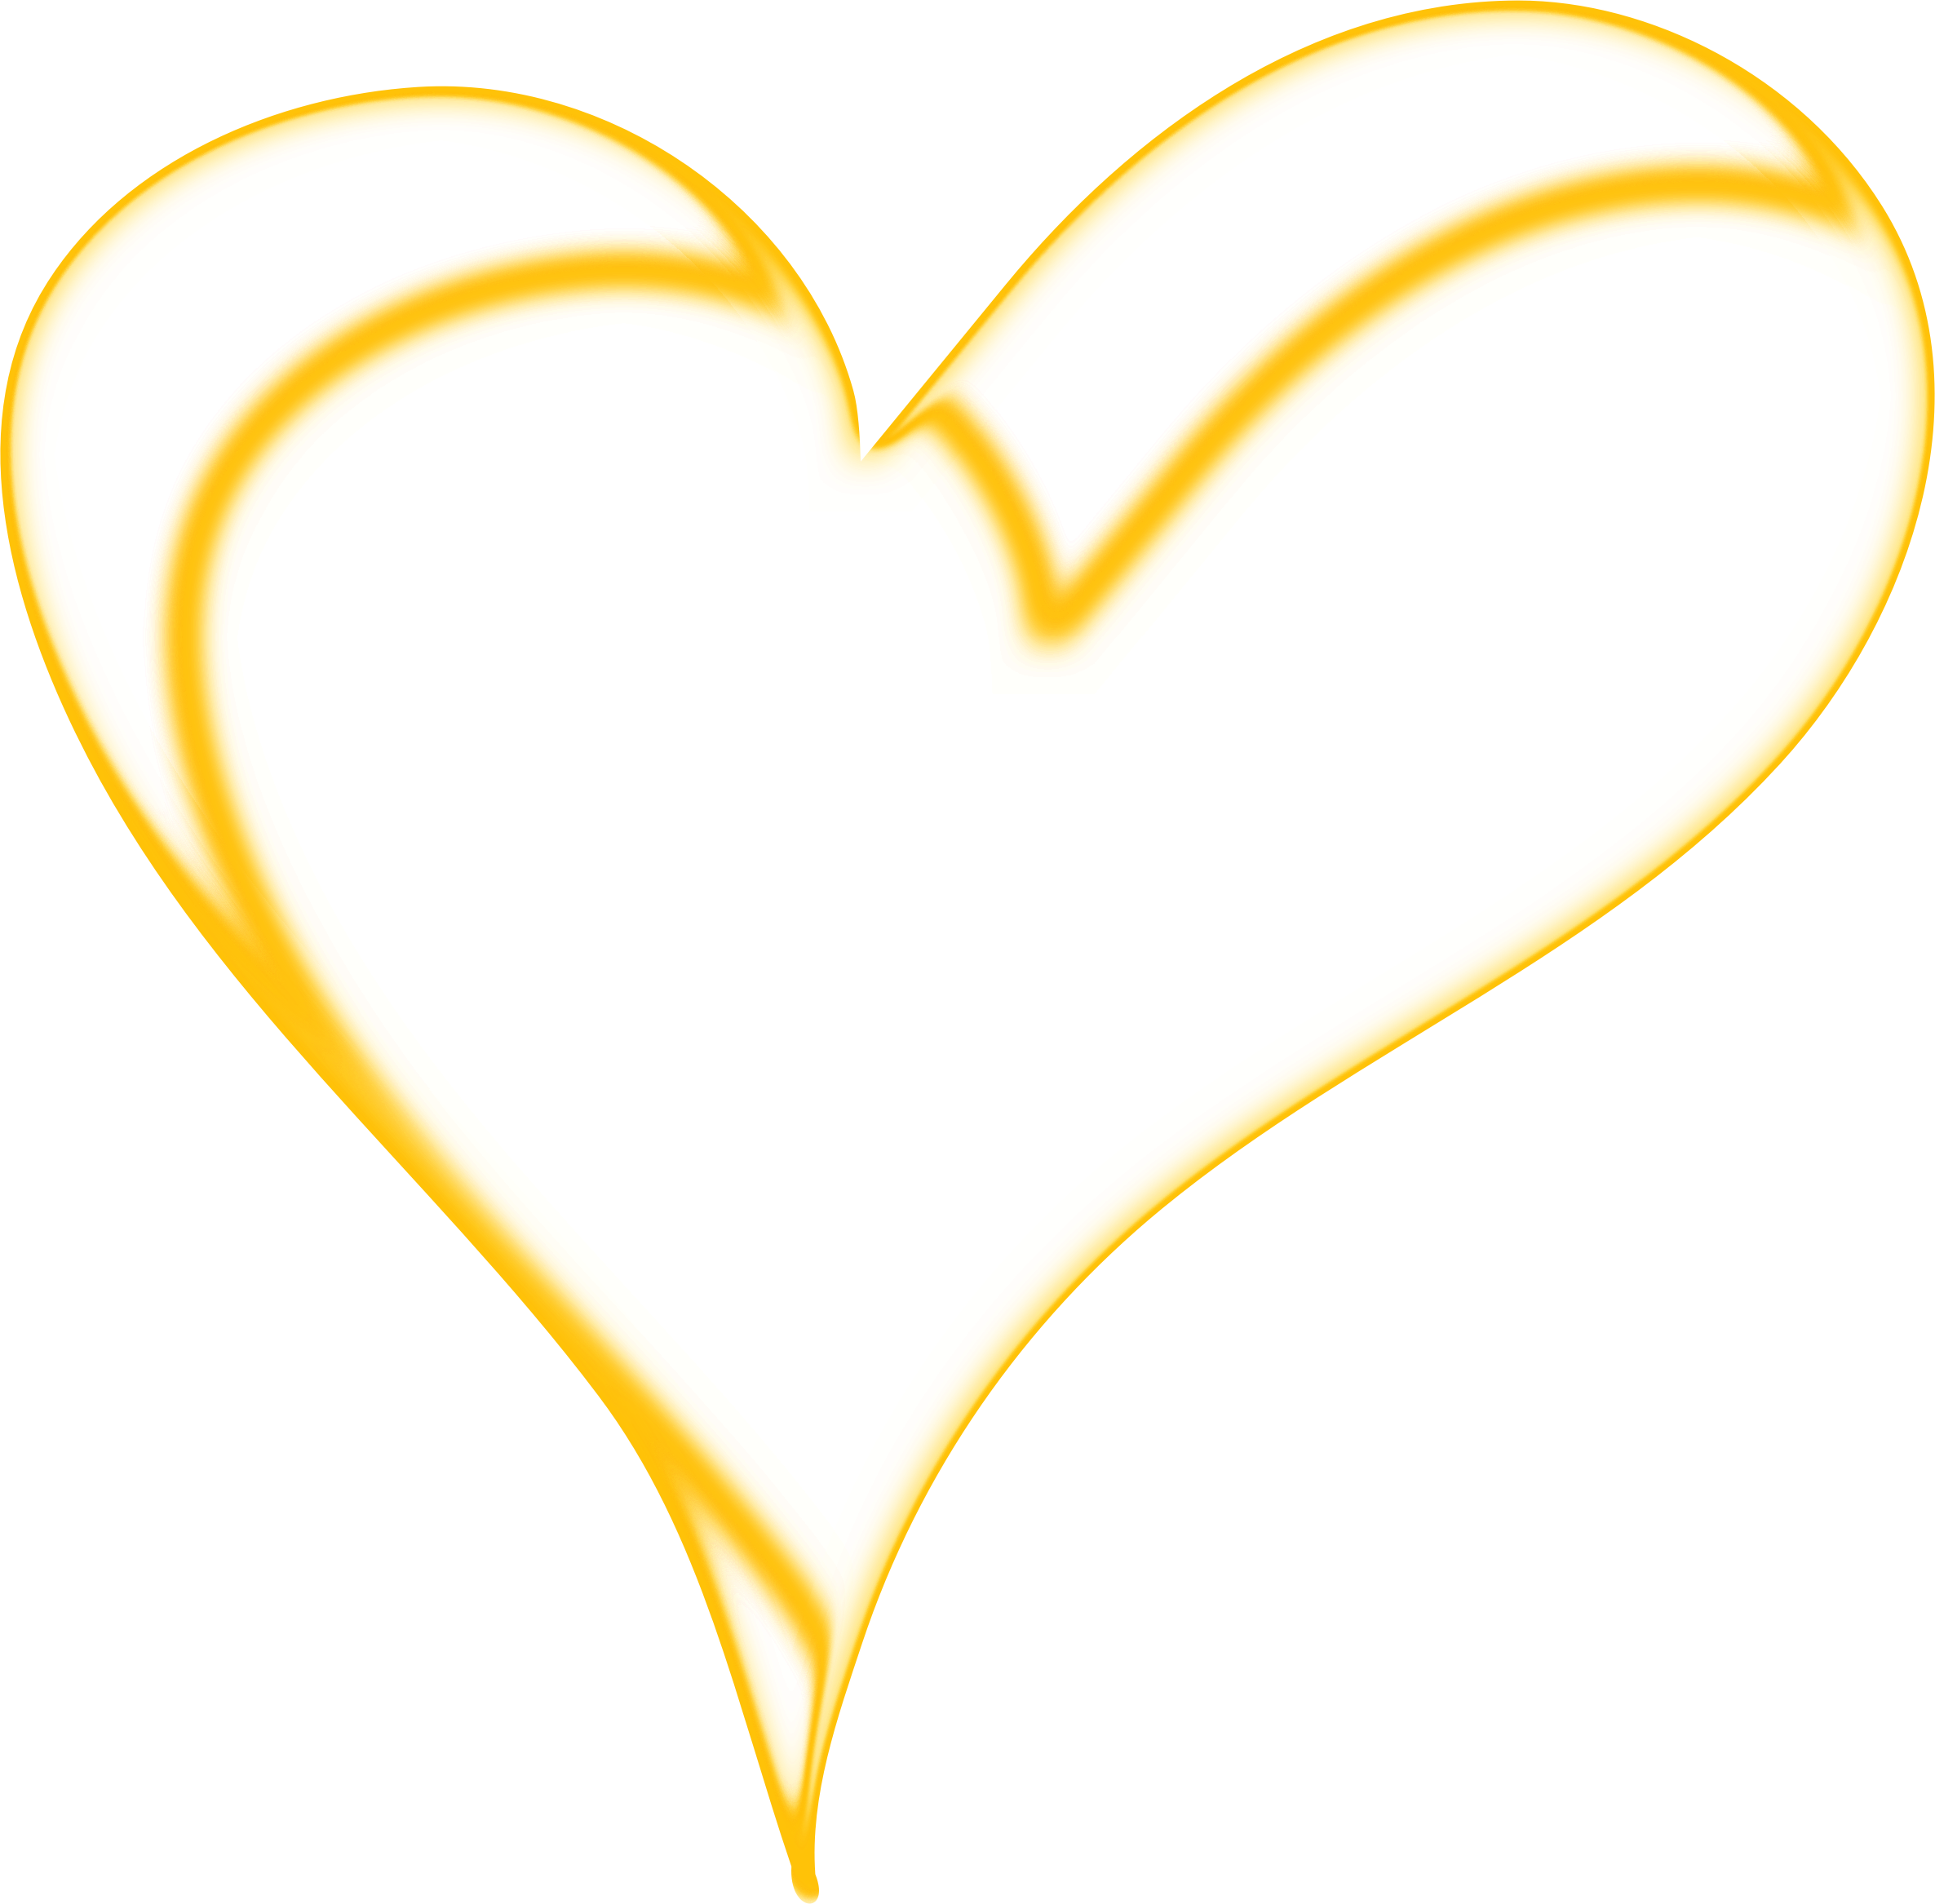 Heart Of Gold - Heart (2372x2334)